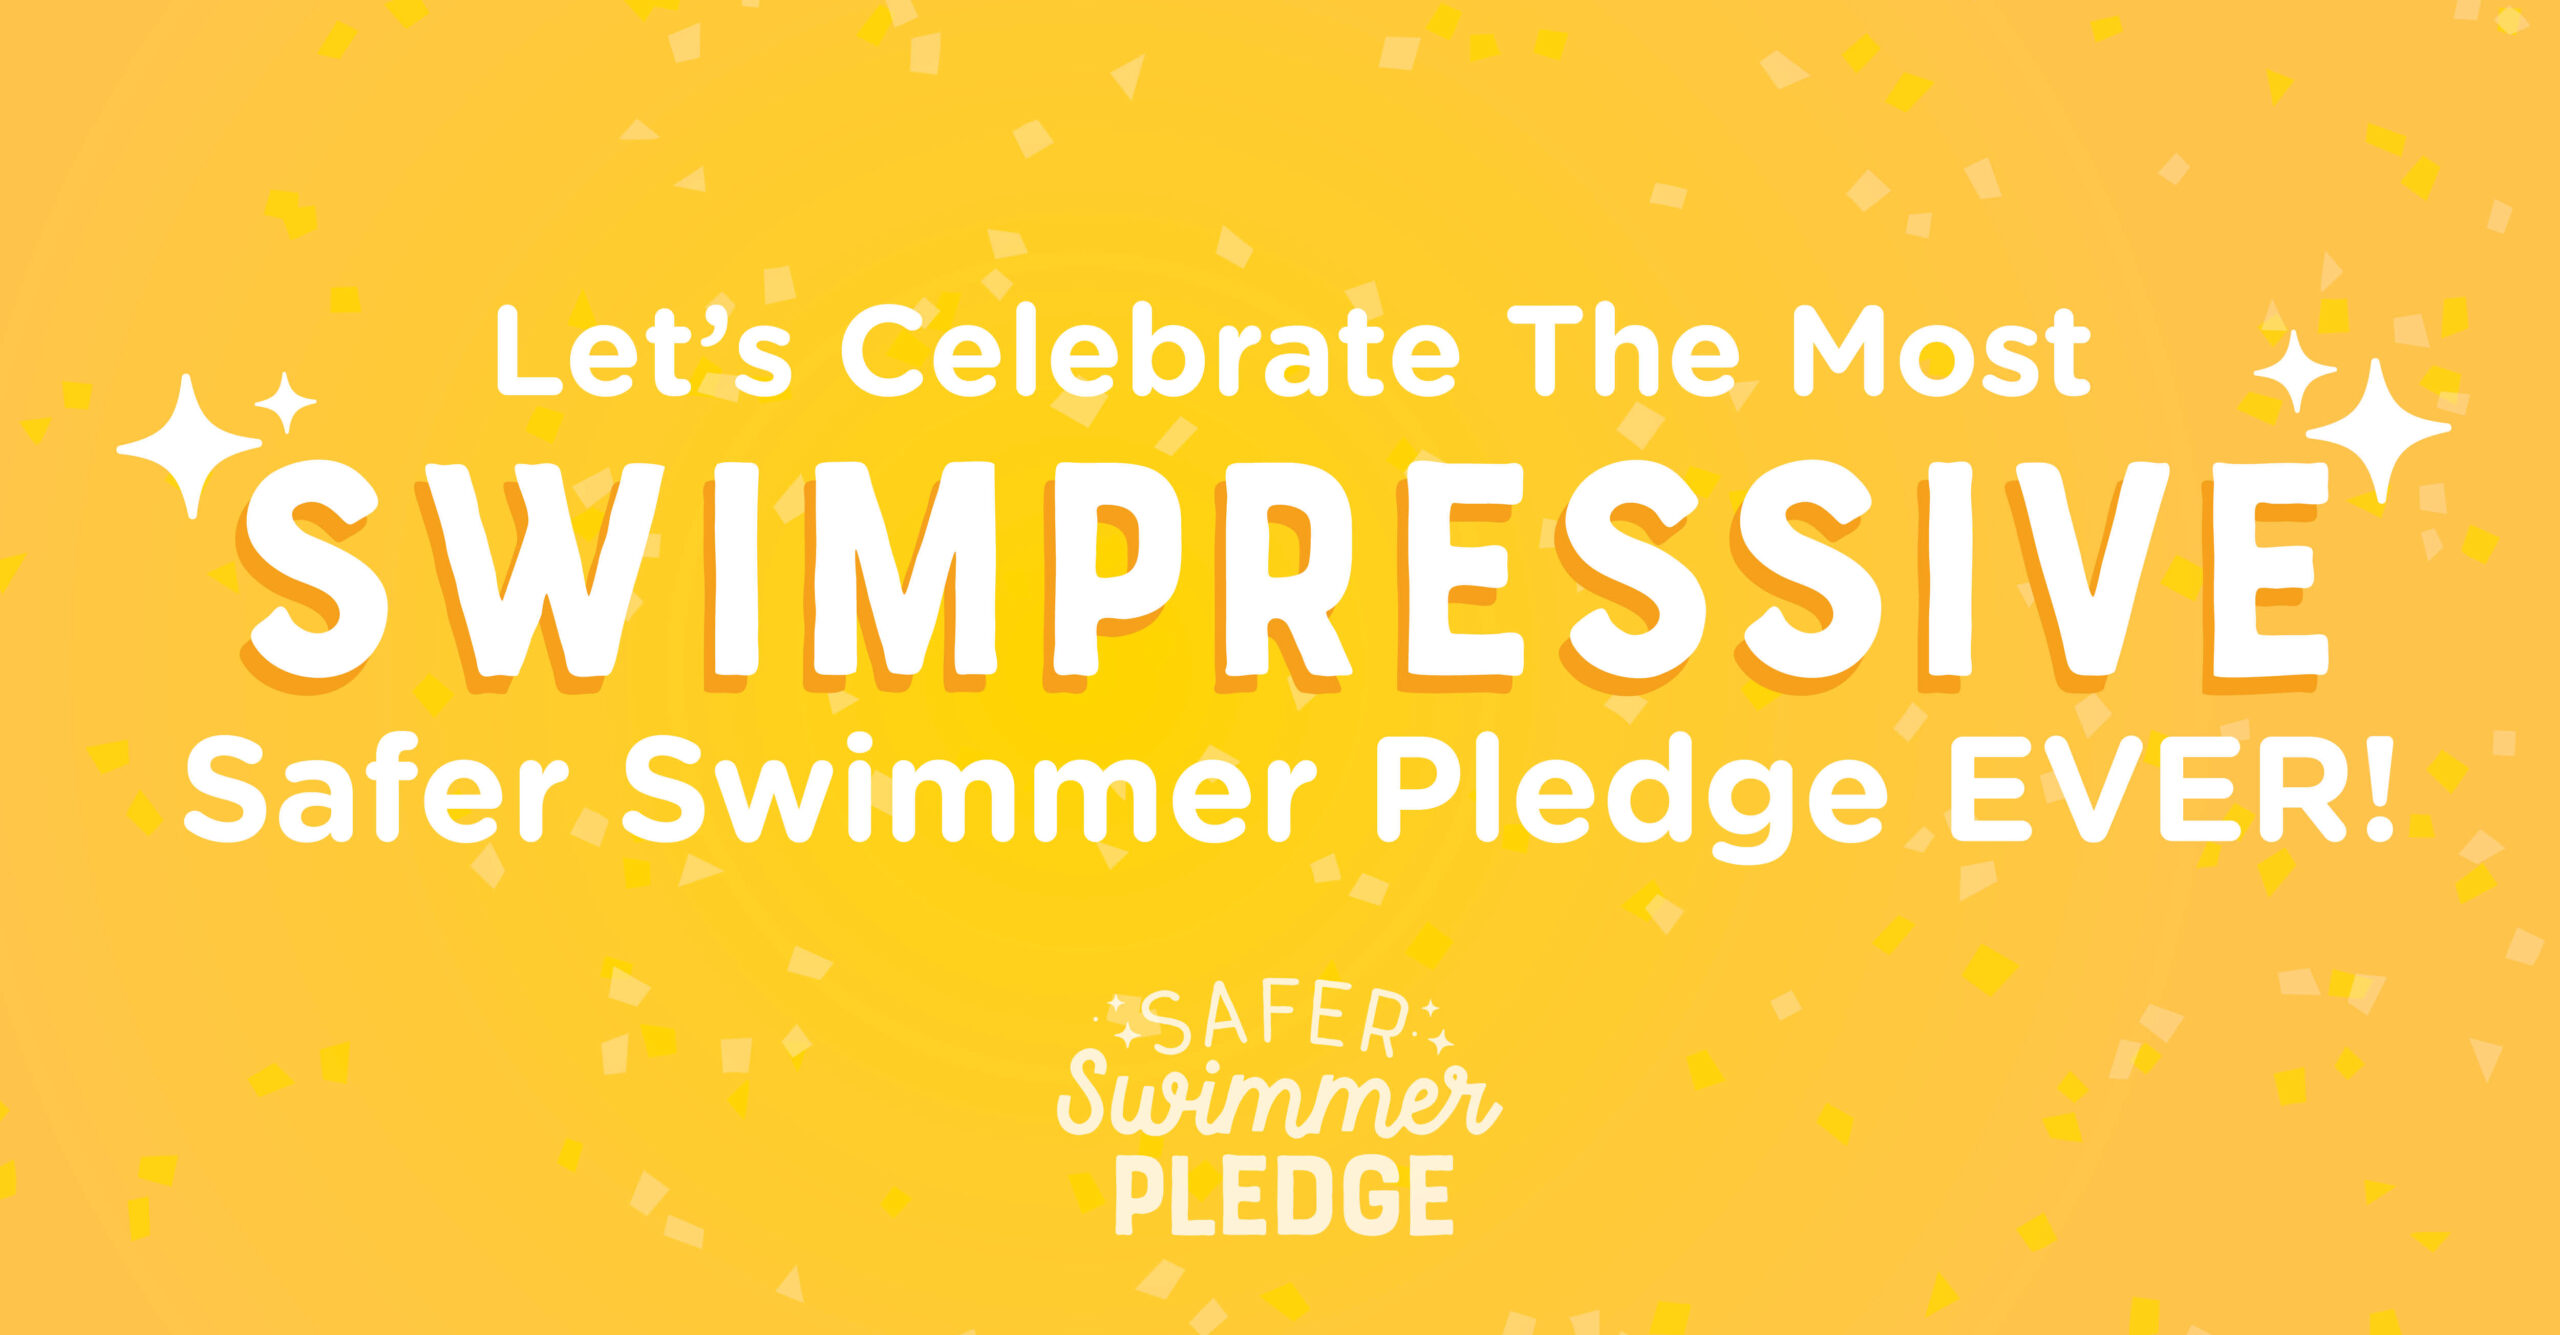 Let's Celebrate the Safer Swimmer Pledge!